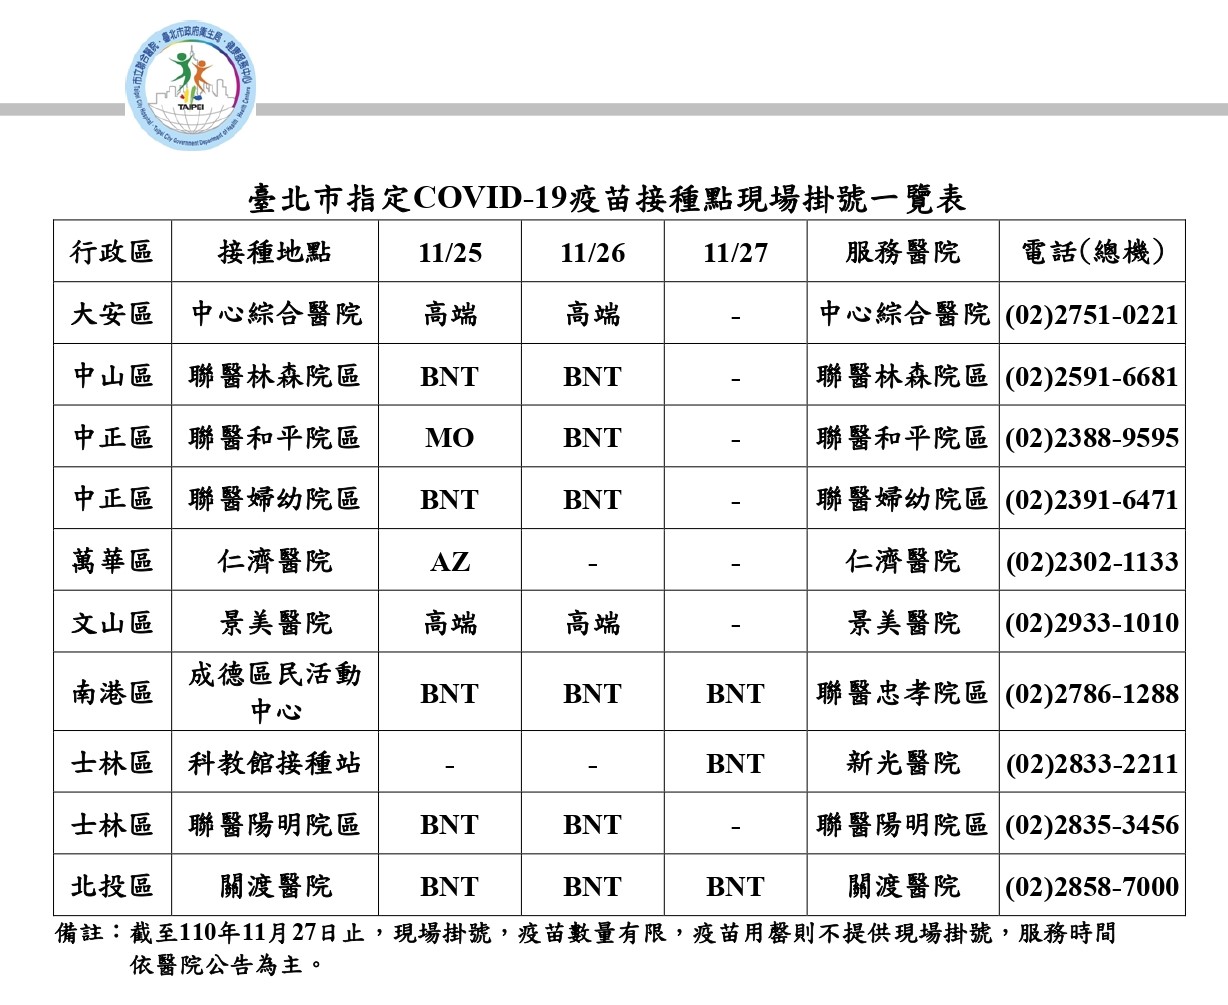 Daftar tempat vaksinasi COVID-19 yang ditunjuk Kota Taipei, layanan terkait akan tersedia hingga 27 November. (Sumber: Pemerintah Kota Taipei)